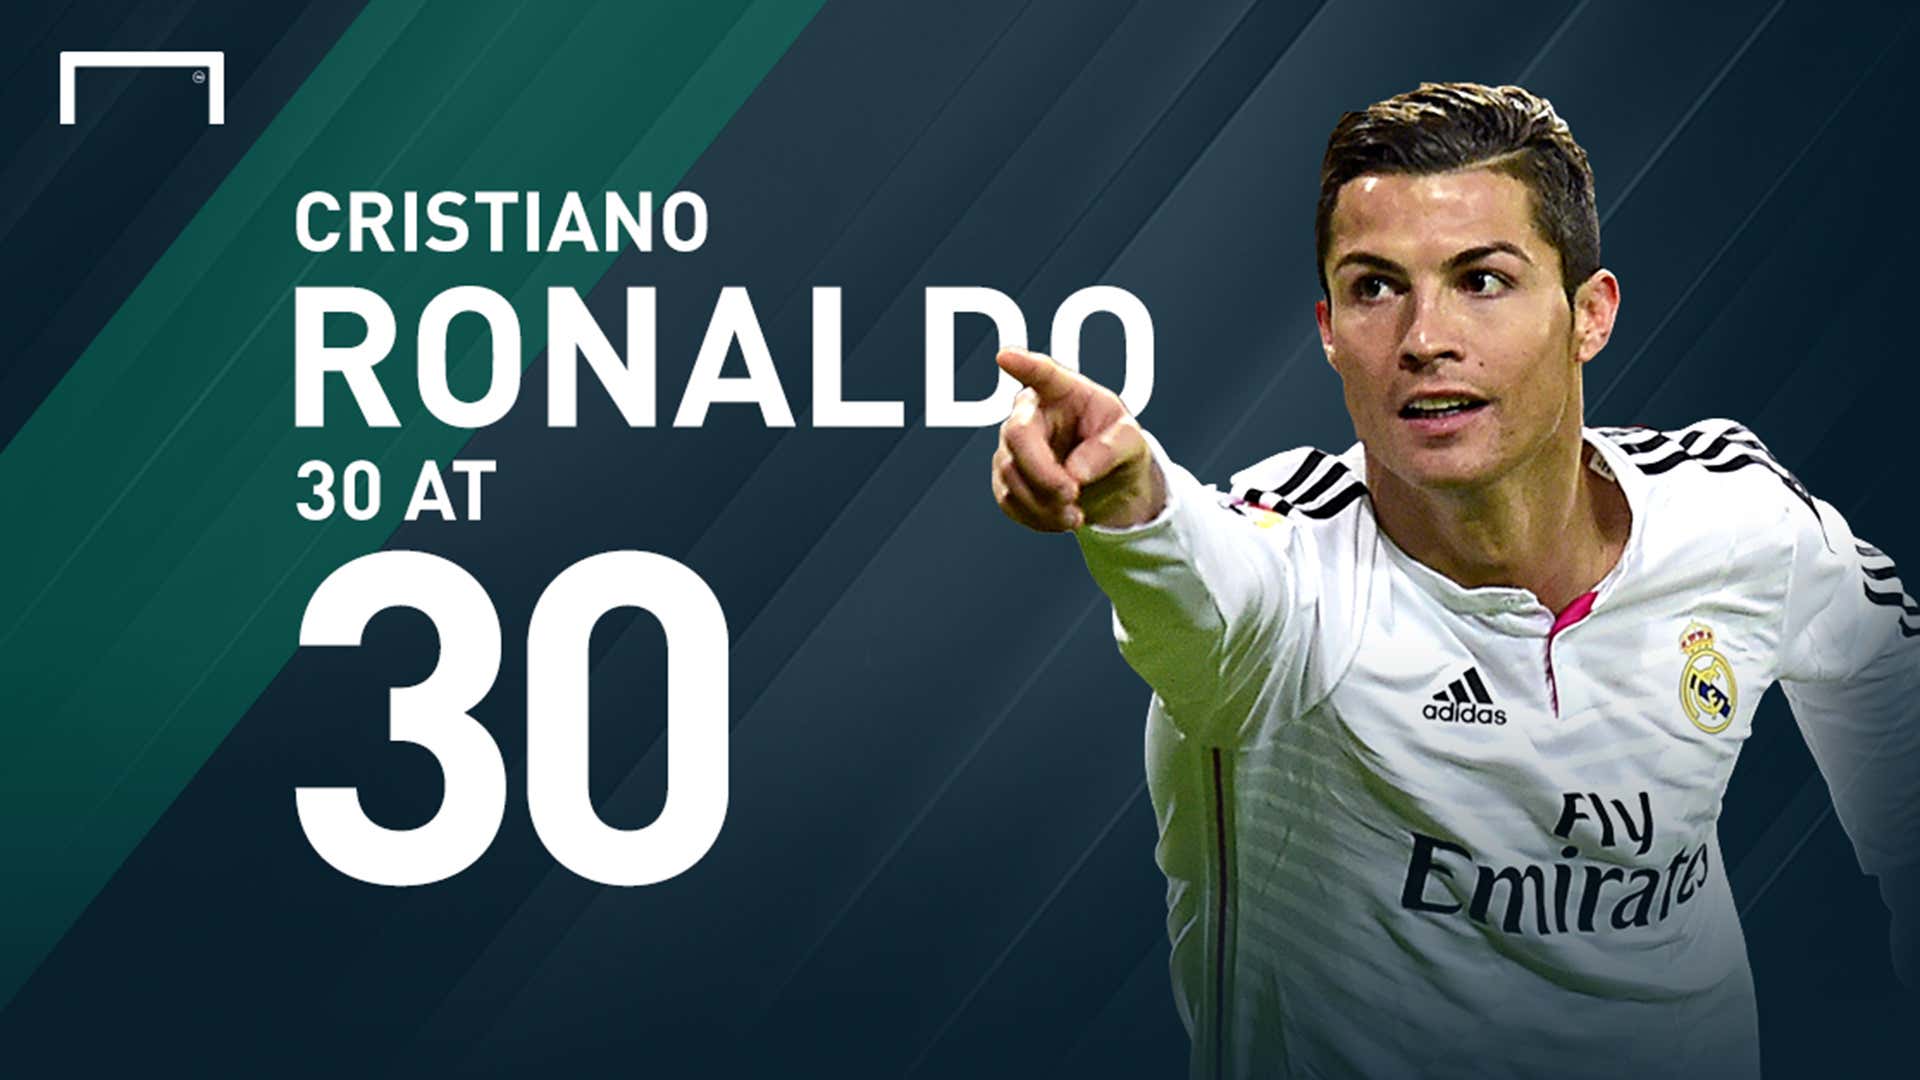 Los 30 mejores momentos de la carrera de Cristiano Ronaldo  |  